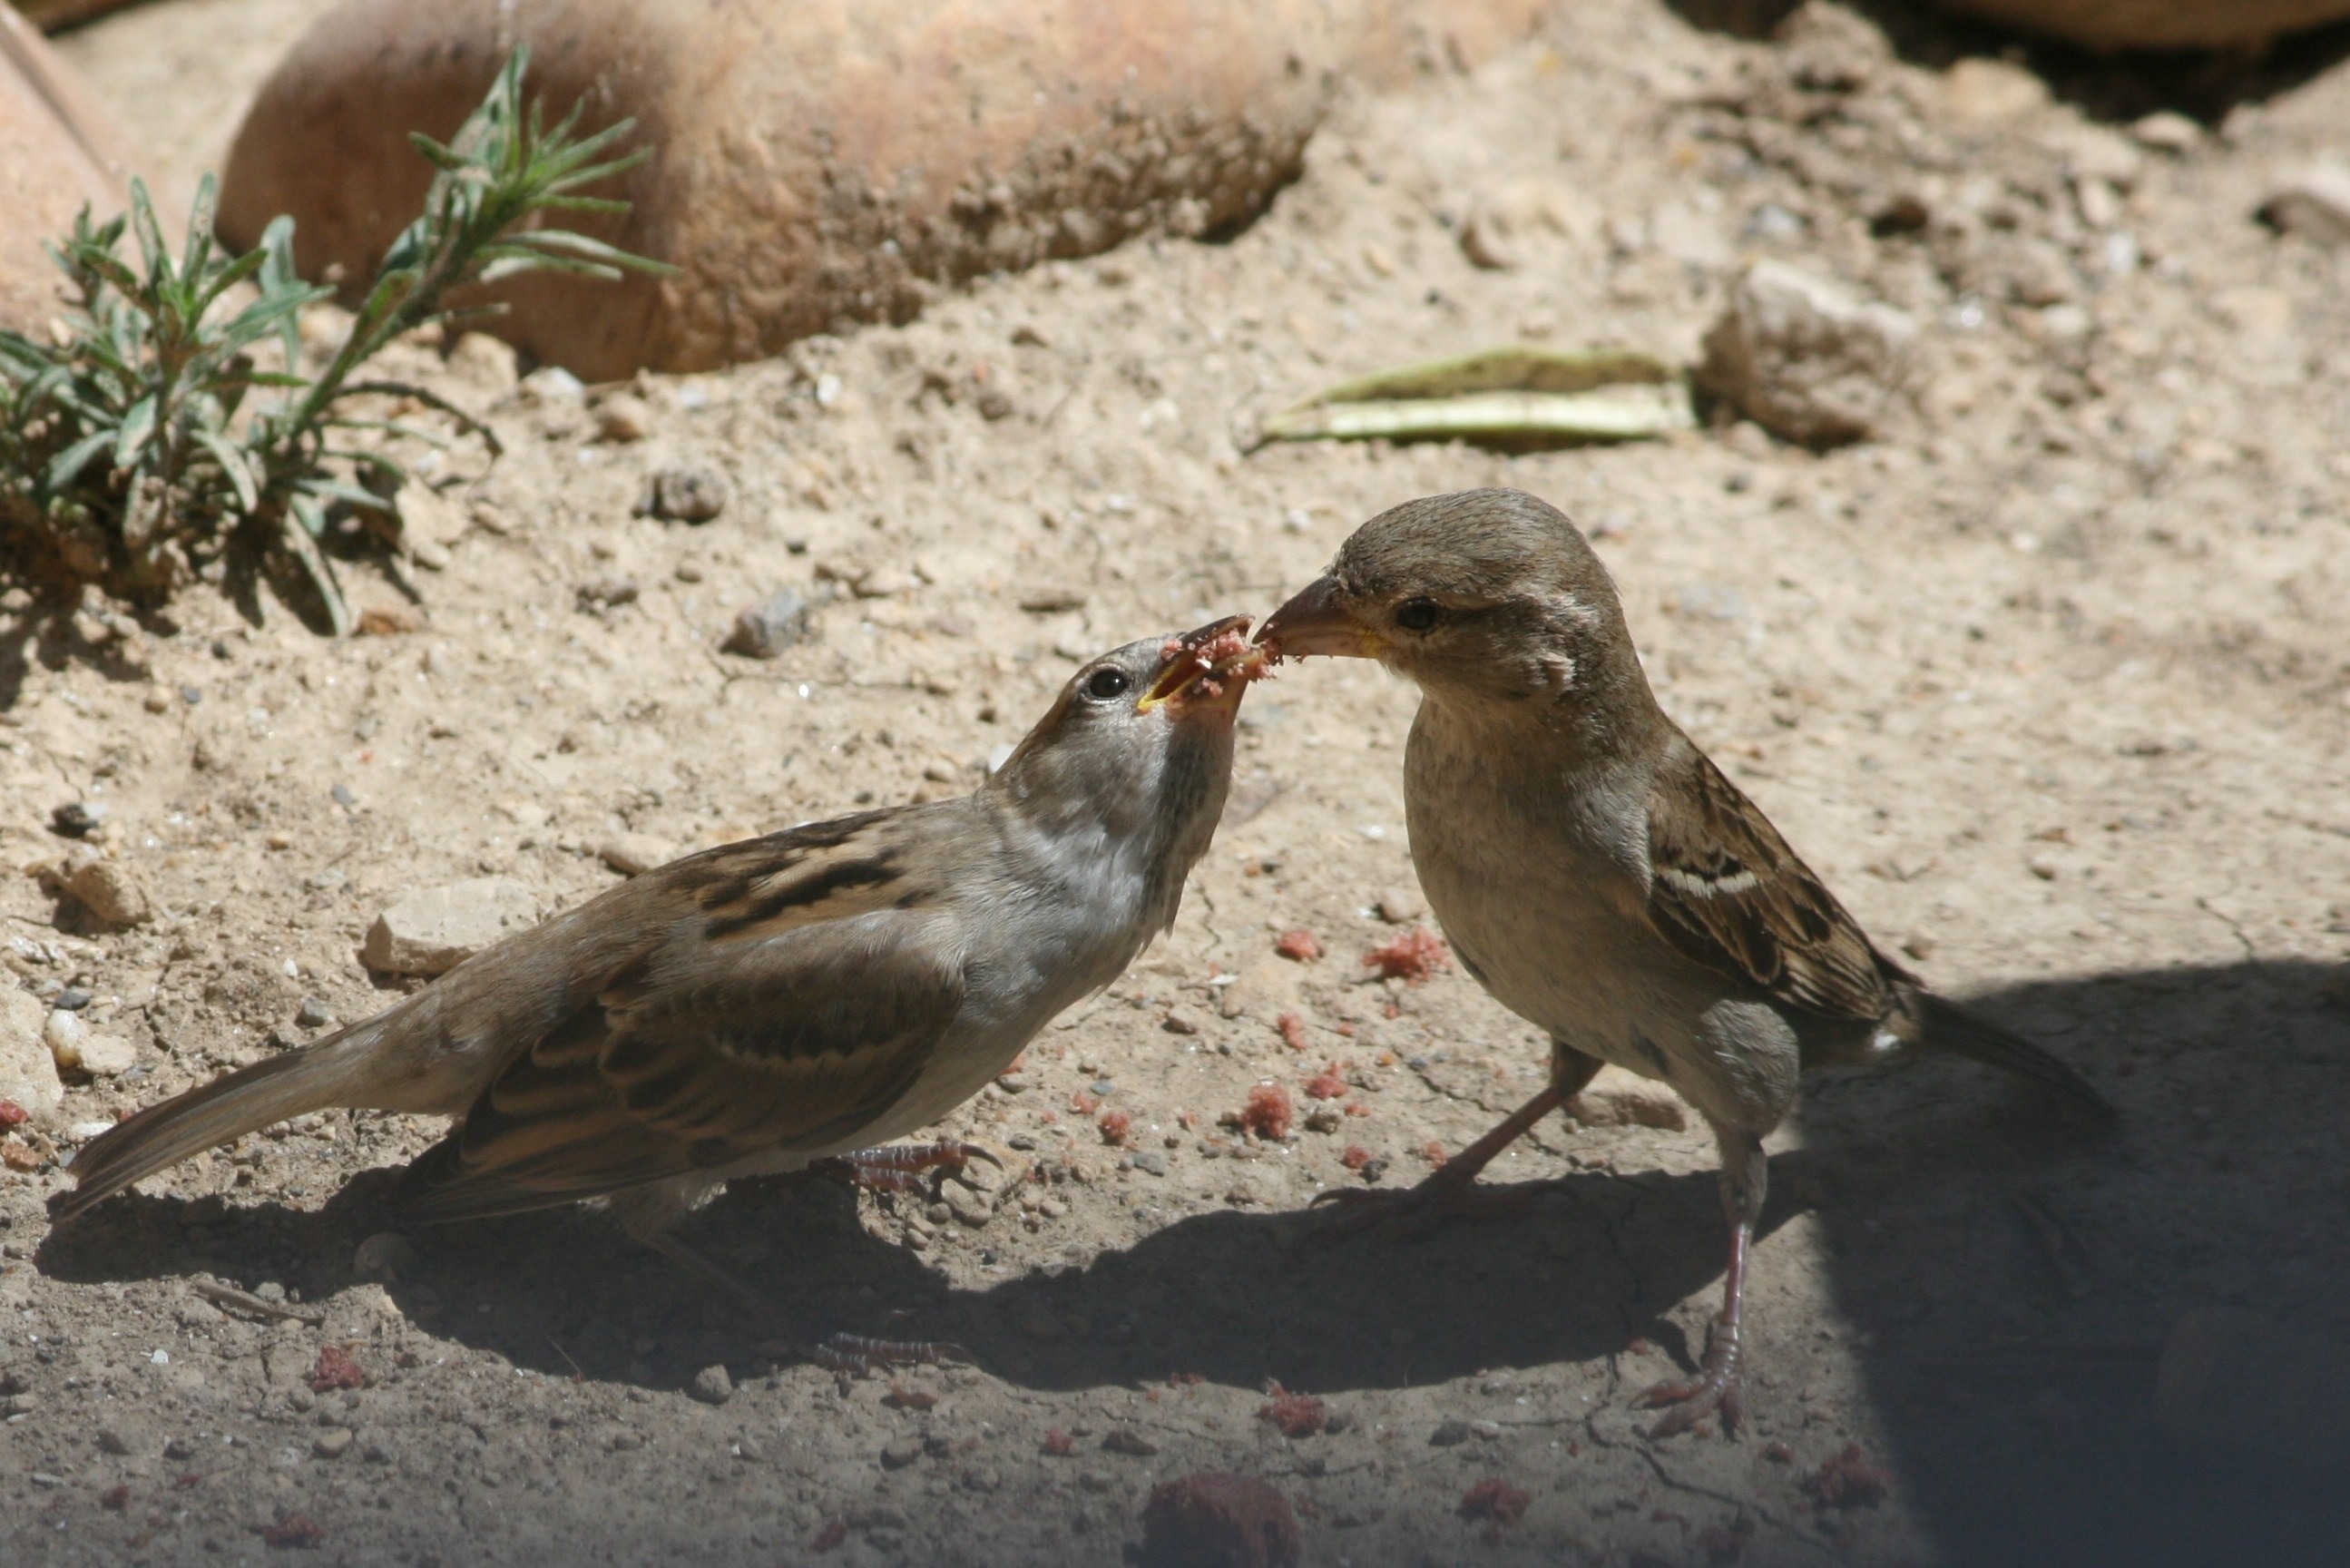 2 brown and grey sparrow birds